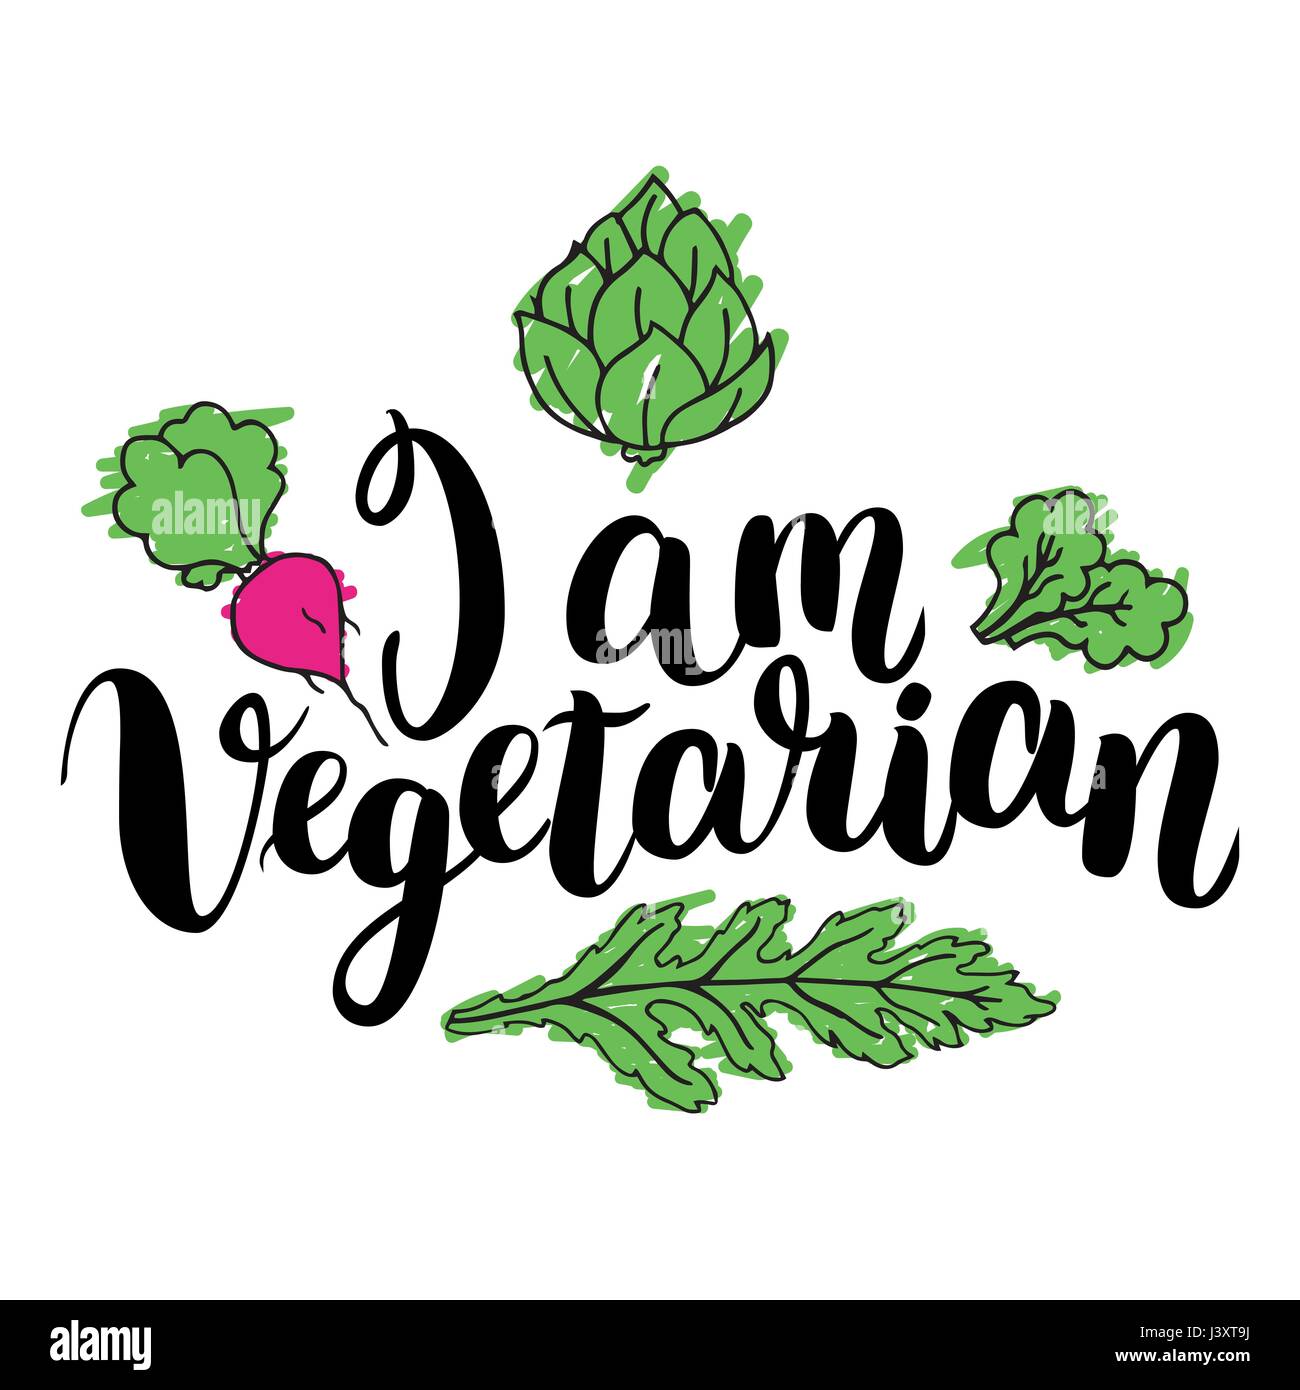 Je suis végétarienne. Citation inspirante à propos de végétarien. Expression calligraphie moderne dessiné à la main avec Apple. Lettrage manuscrit pour imprimer et poster. Illustration de Vecteur